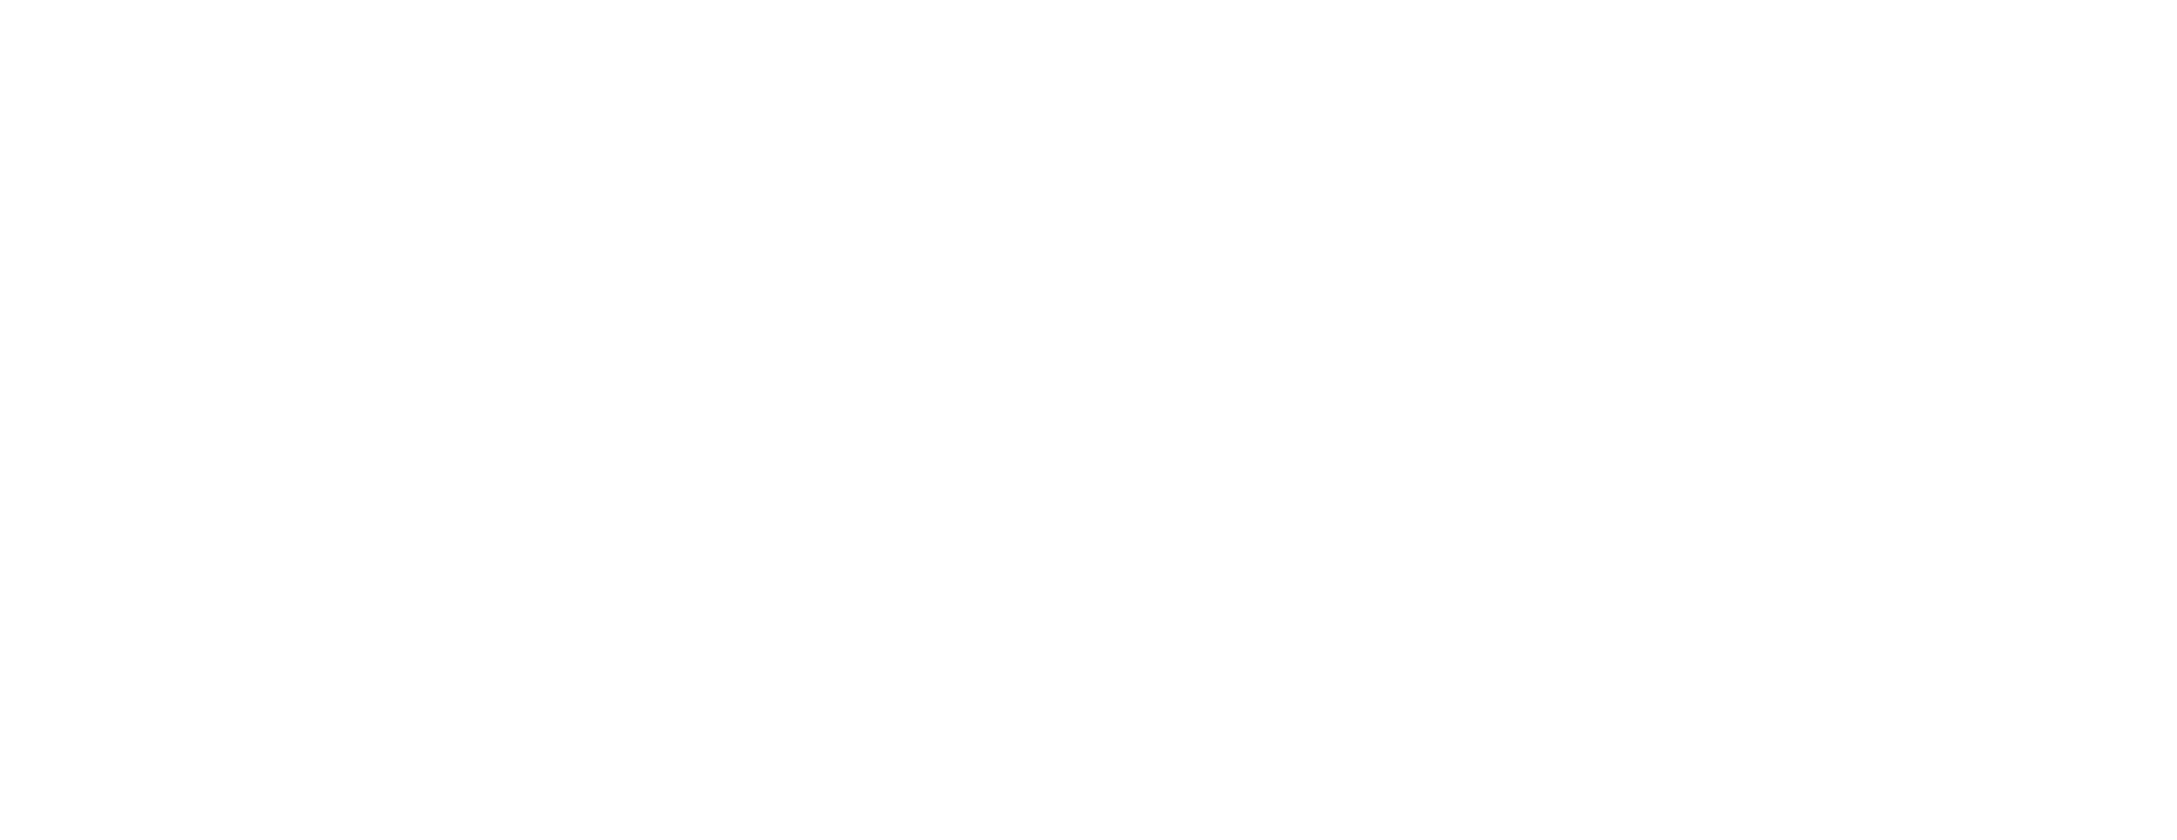 Awshad | Neo Vedic Wellness 